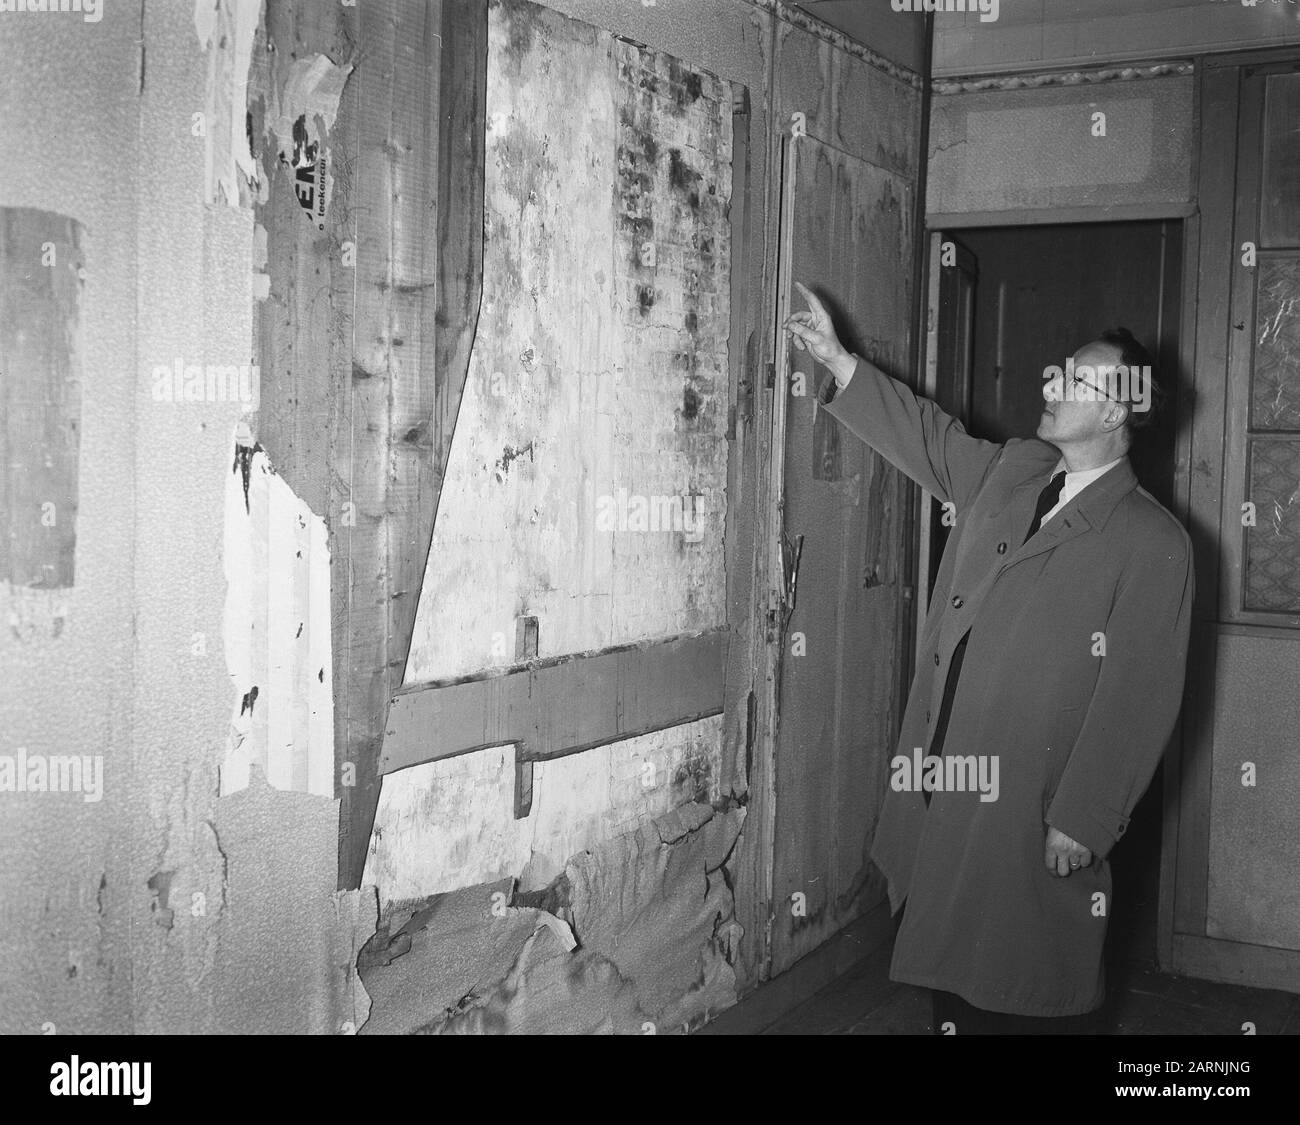 Geheimnis-Anhang Interior im Geheim-Anhang von Anne Frank Datum: 25. März 1957 Ort: Amsterdam, Noord-Holland Schlüsselwörter: Gebäude, Innenräume Stockfoto